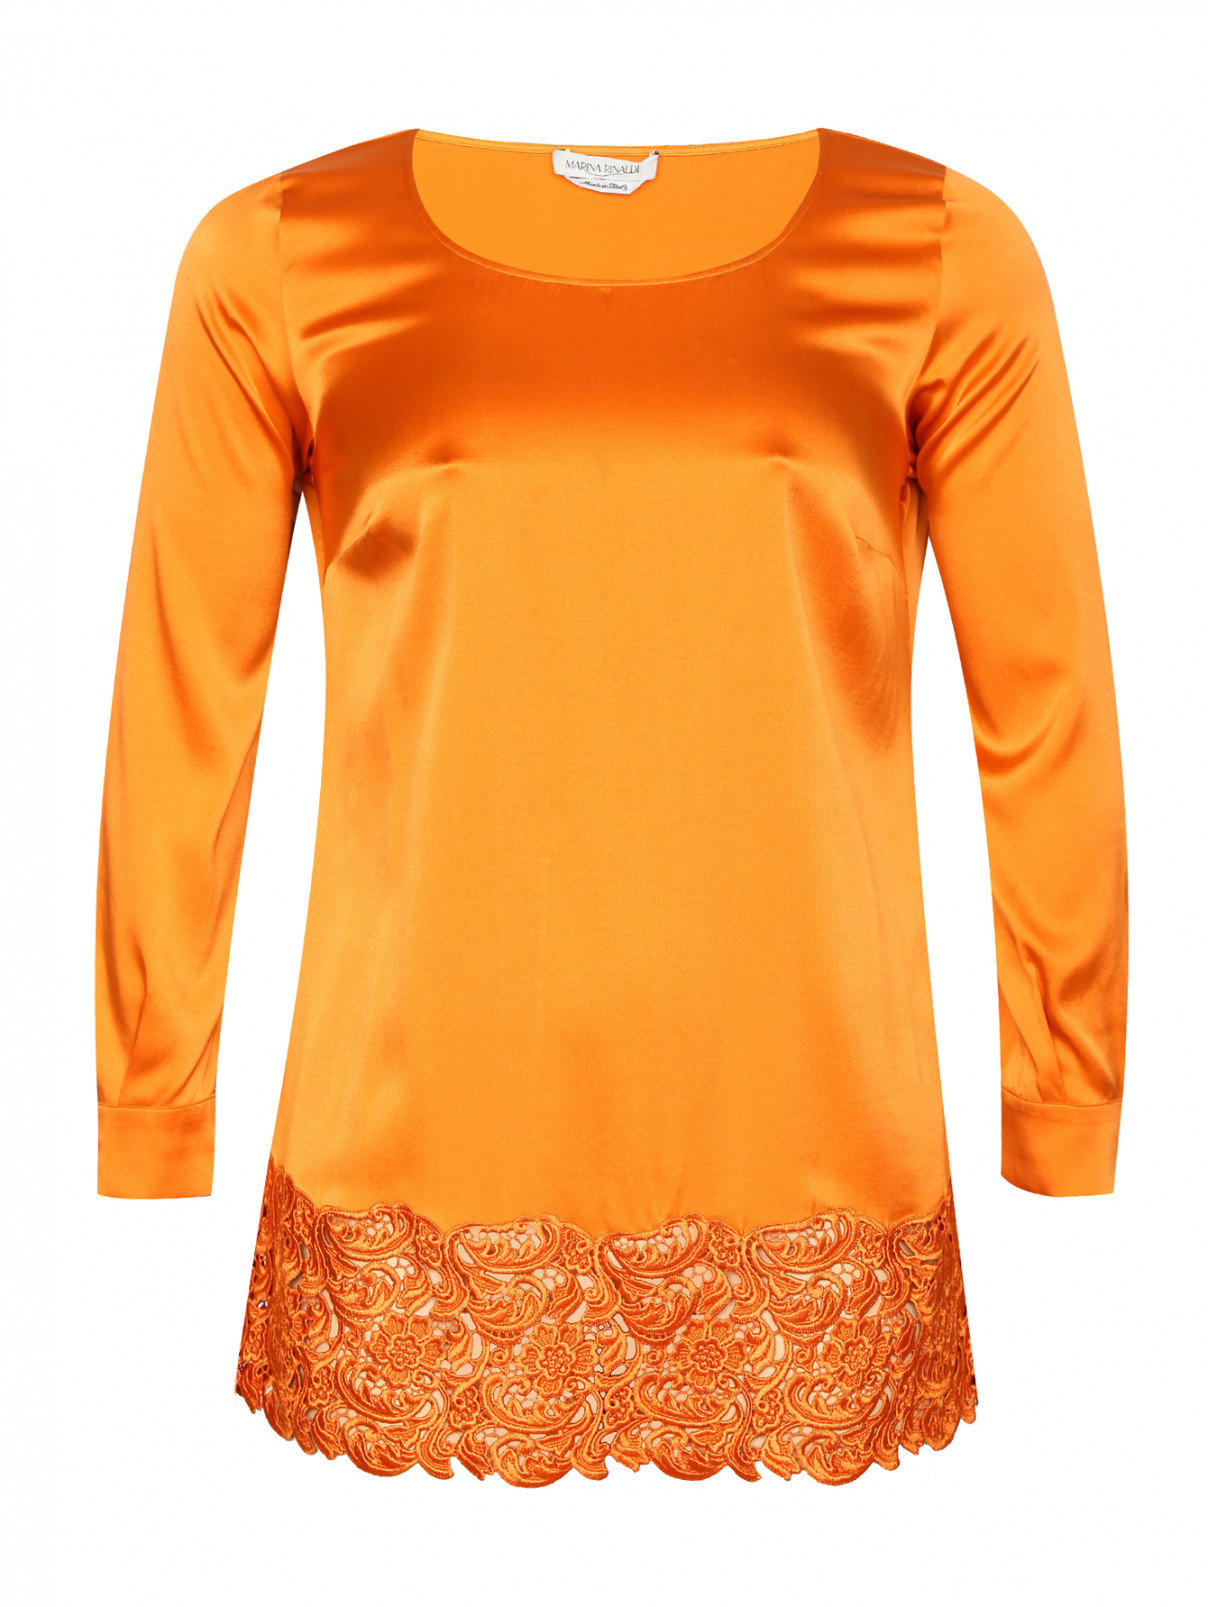 Удлиненная блуза из шелка с кружевной отделкой Marina Rinaldi  –  Общий вид  – Цвет:  Оранжевый